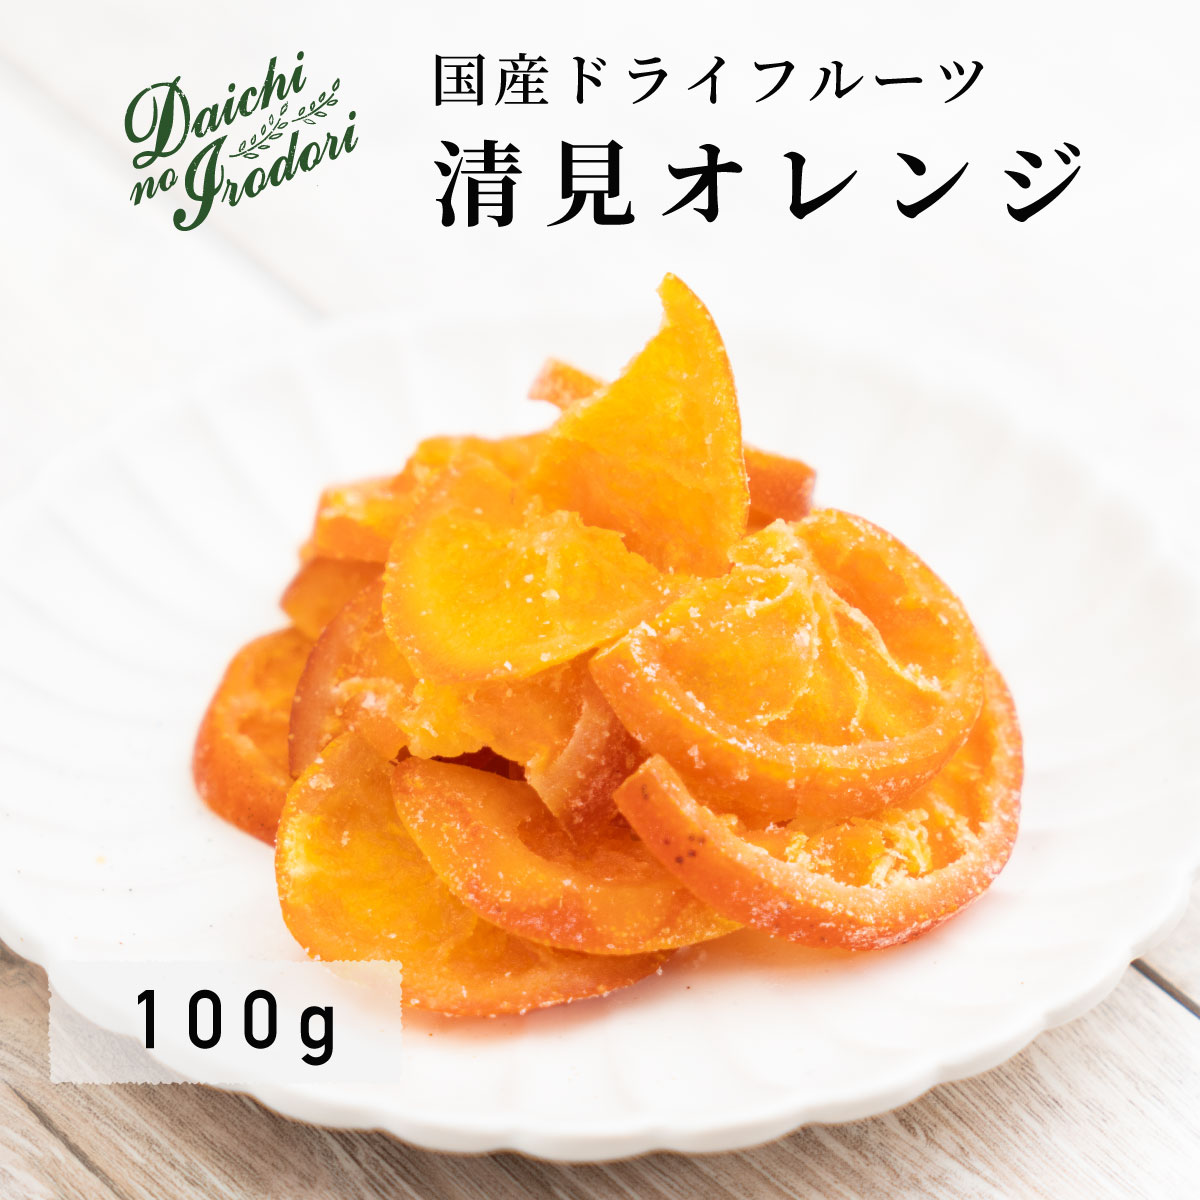 乾燥橘子果實 水果乾 日本產 清見橘子 100g x 1包 夾鏈袋裝日本必買 | 日本樂天熱銷